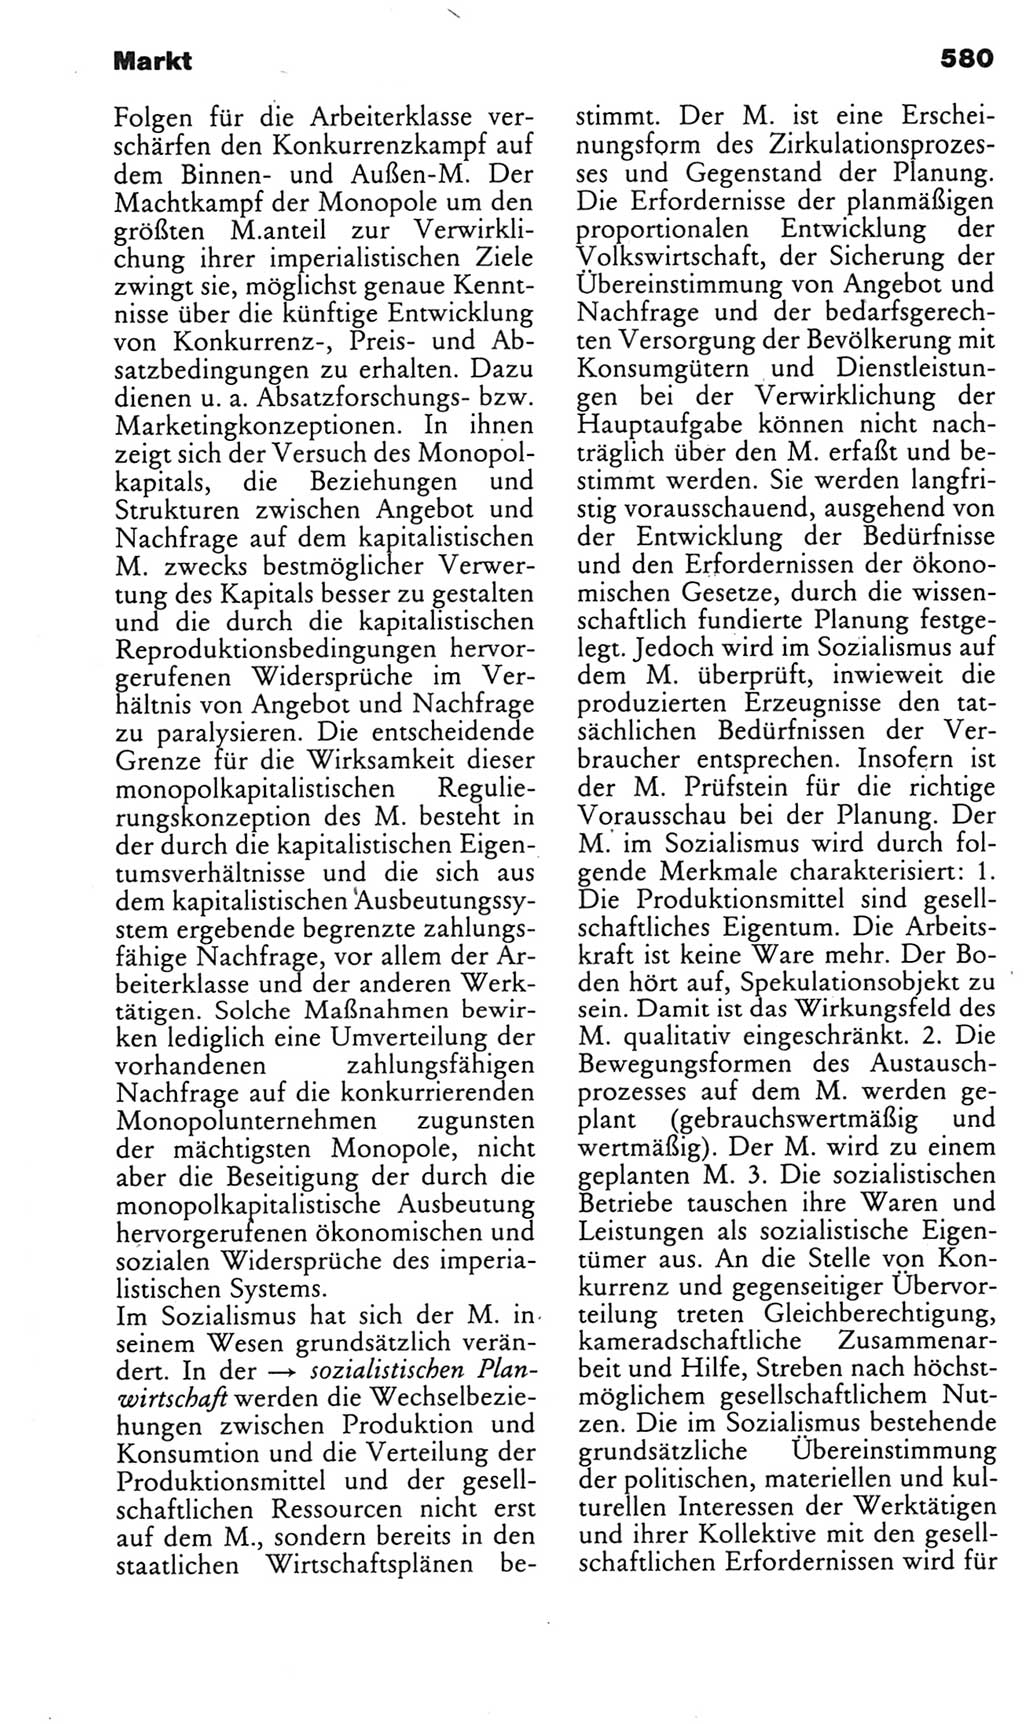 Kleines politisches Wörterbuch [Deutsche Demokratische Republik (DDR)] 1985, Seite 580 (Kl. pol. Wb. DDR 1985, S. 580)